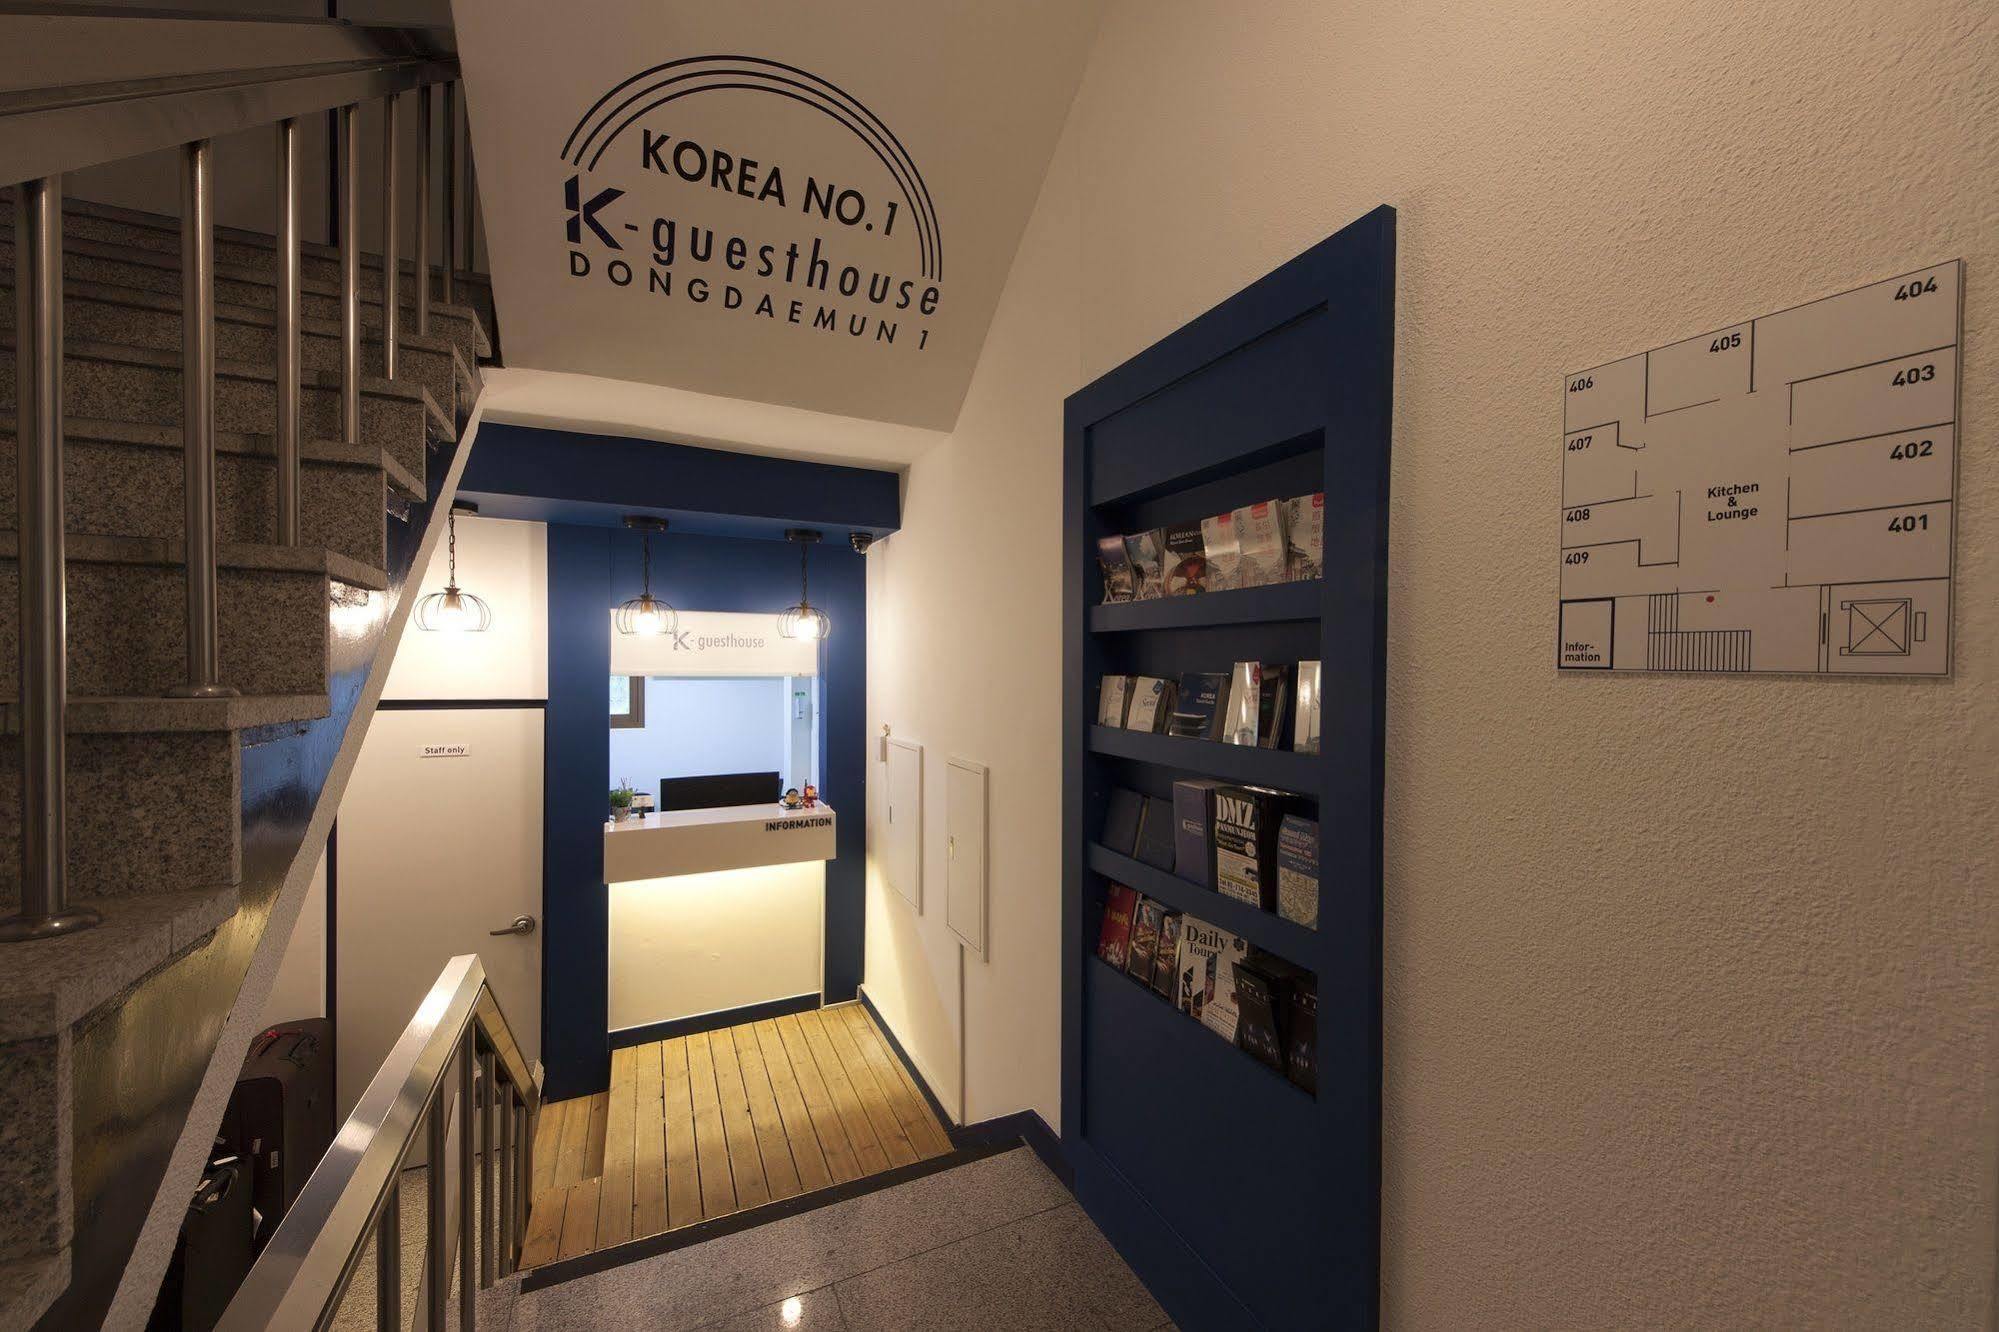 K-Guesthouse Dongdaemun Szöul Kültér fotó